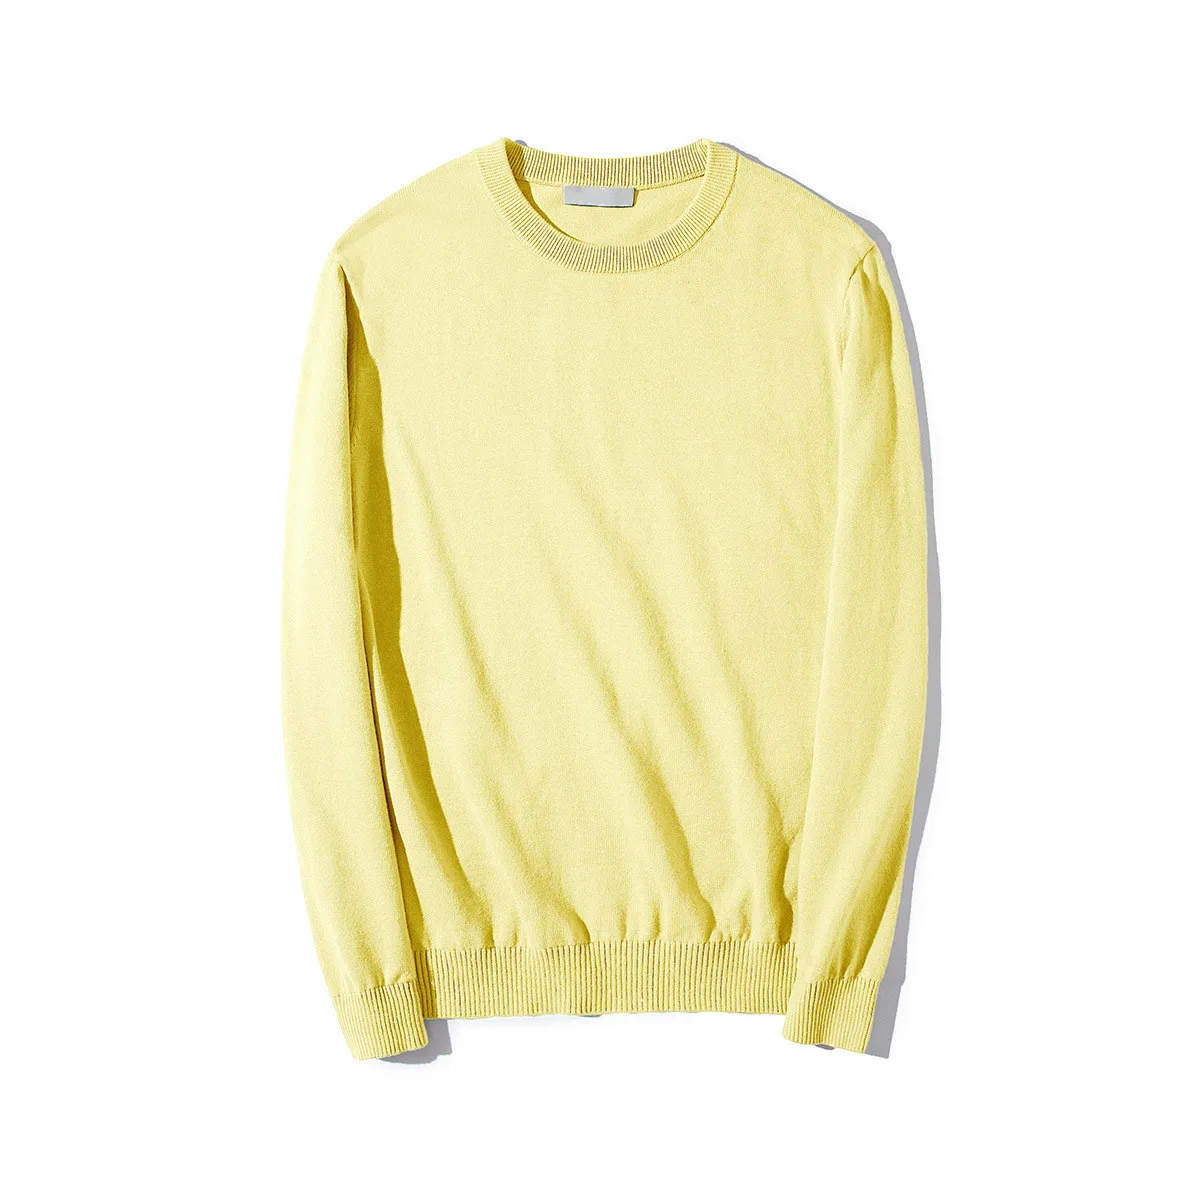 Мужской свитер с длинным рукавом желтый тонкий яркий трикотажный пуловер